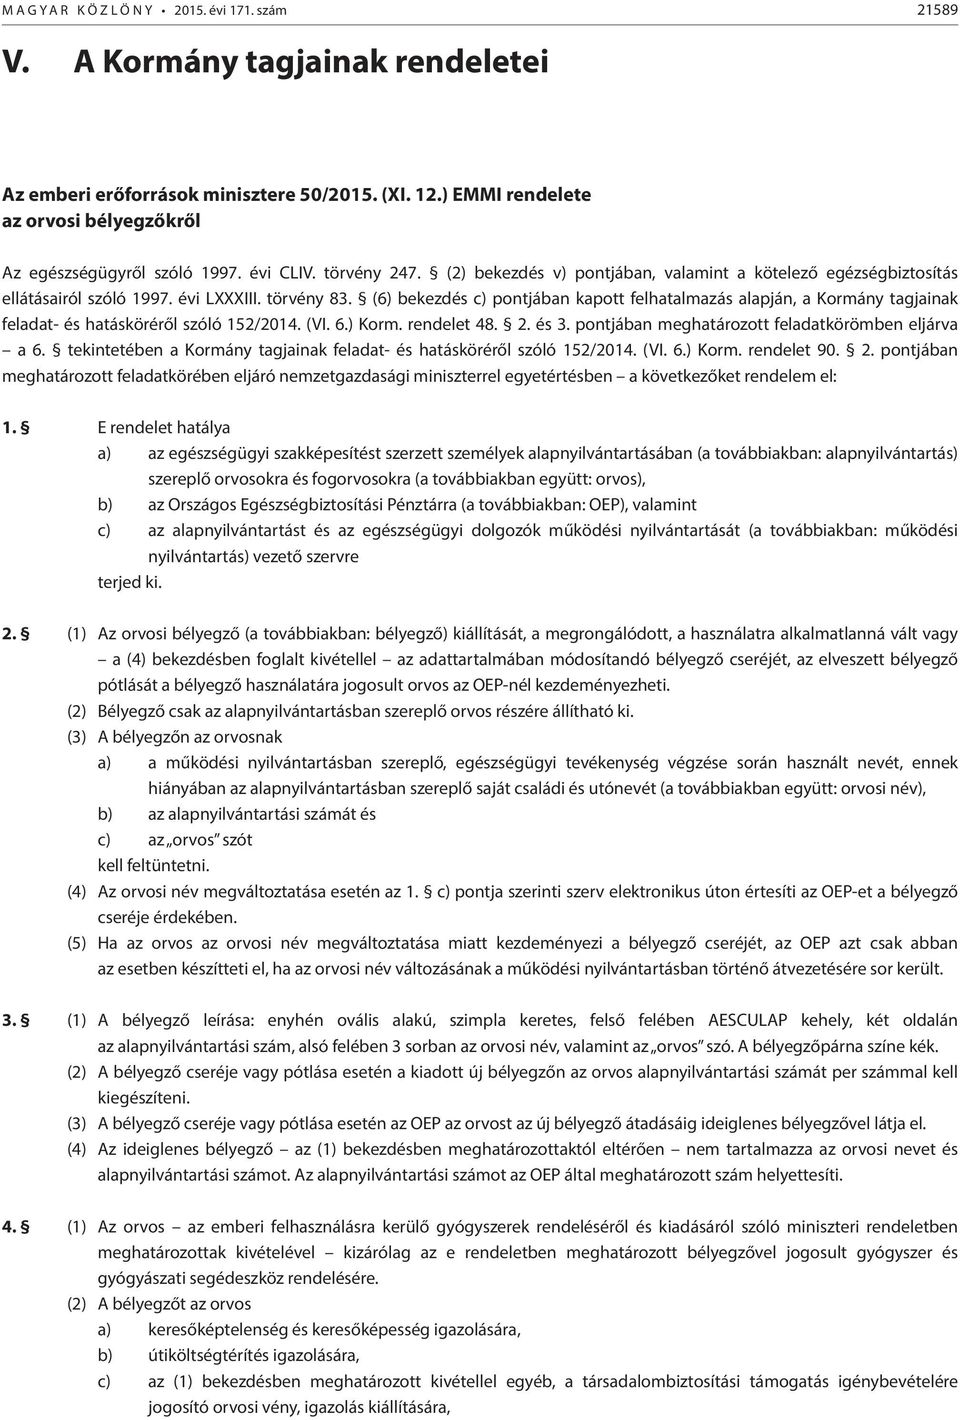 törvény 83. (6) bekezdés c) pontjában kapott felhatalmazás alapján, a Kormány tagjainak feladat- és hatásköréről szóló 152/2014. (VI. 6.) Korm. rendelet 48. 2. és 3.